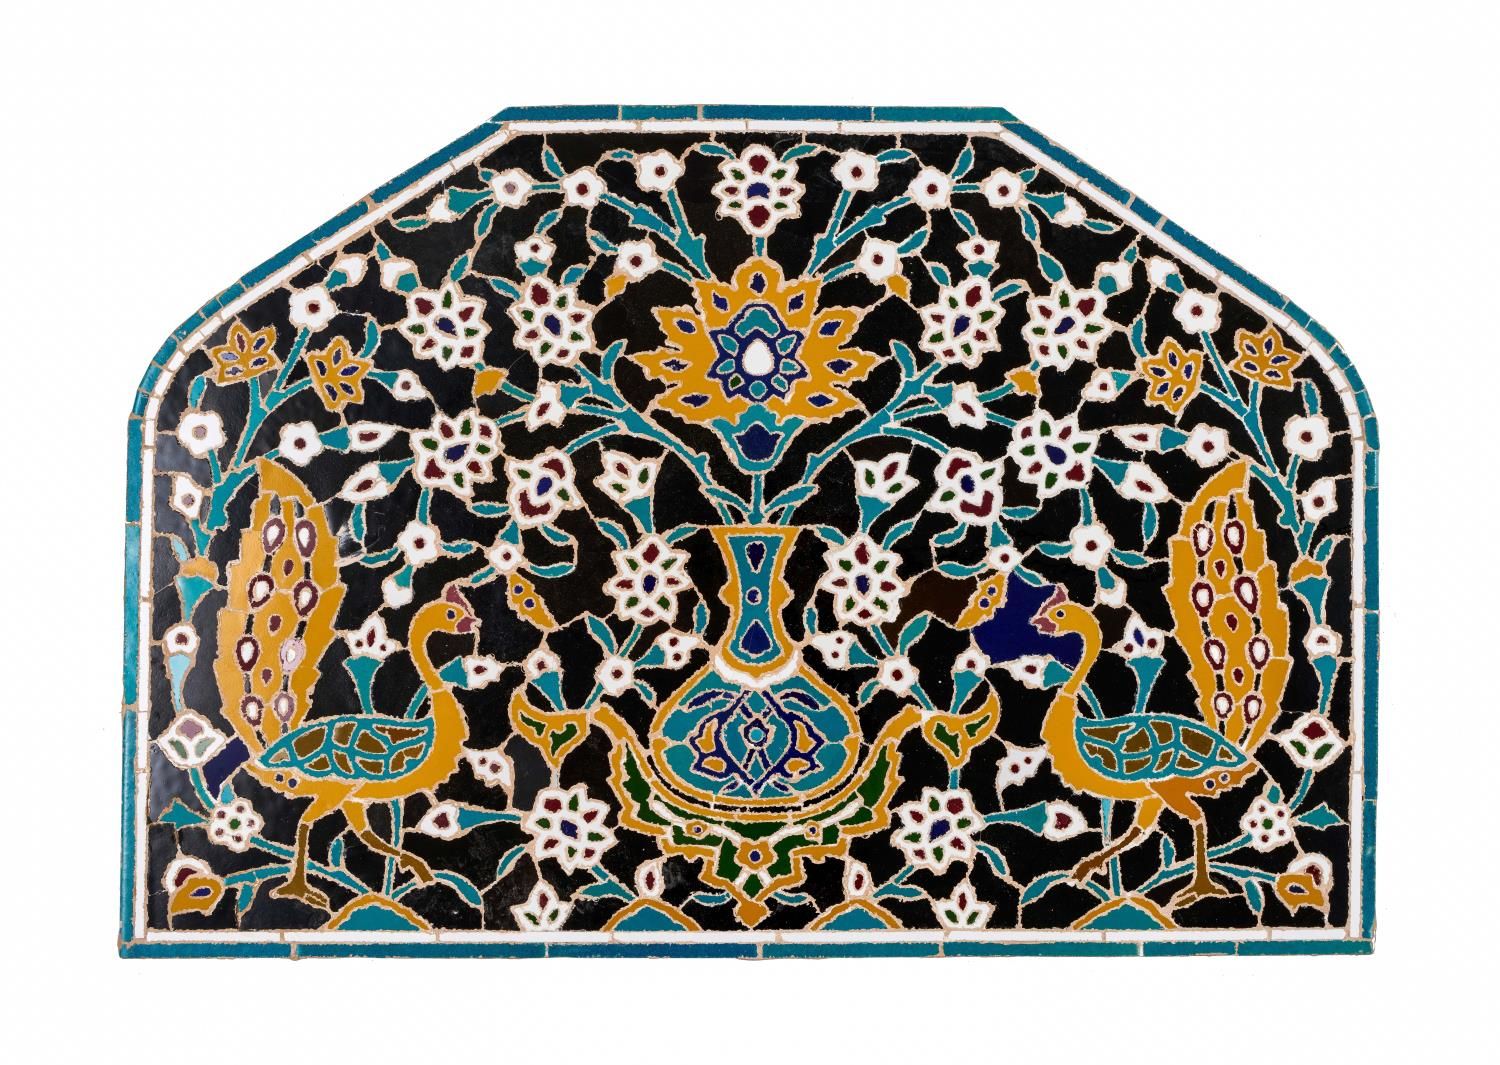 A SAFAVID TILE MOSAIC PANEL IRAN, FIRST THIRD 17TH CENTURY EINE SAFAWIDISCHE FLI&hellip;